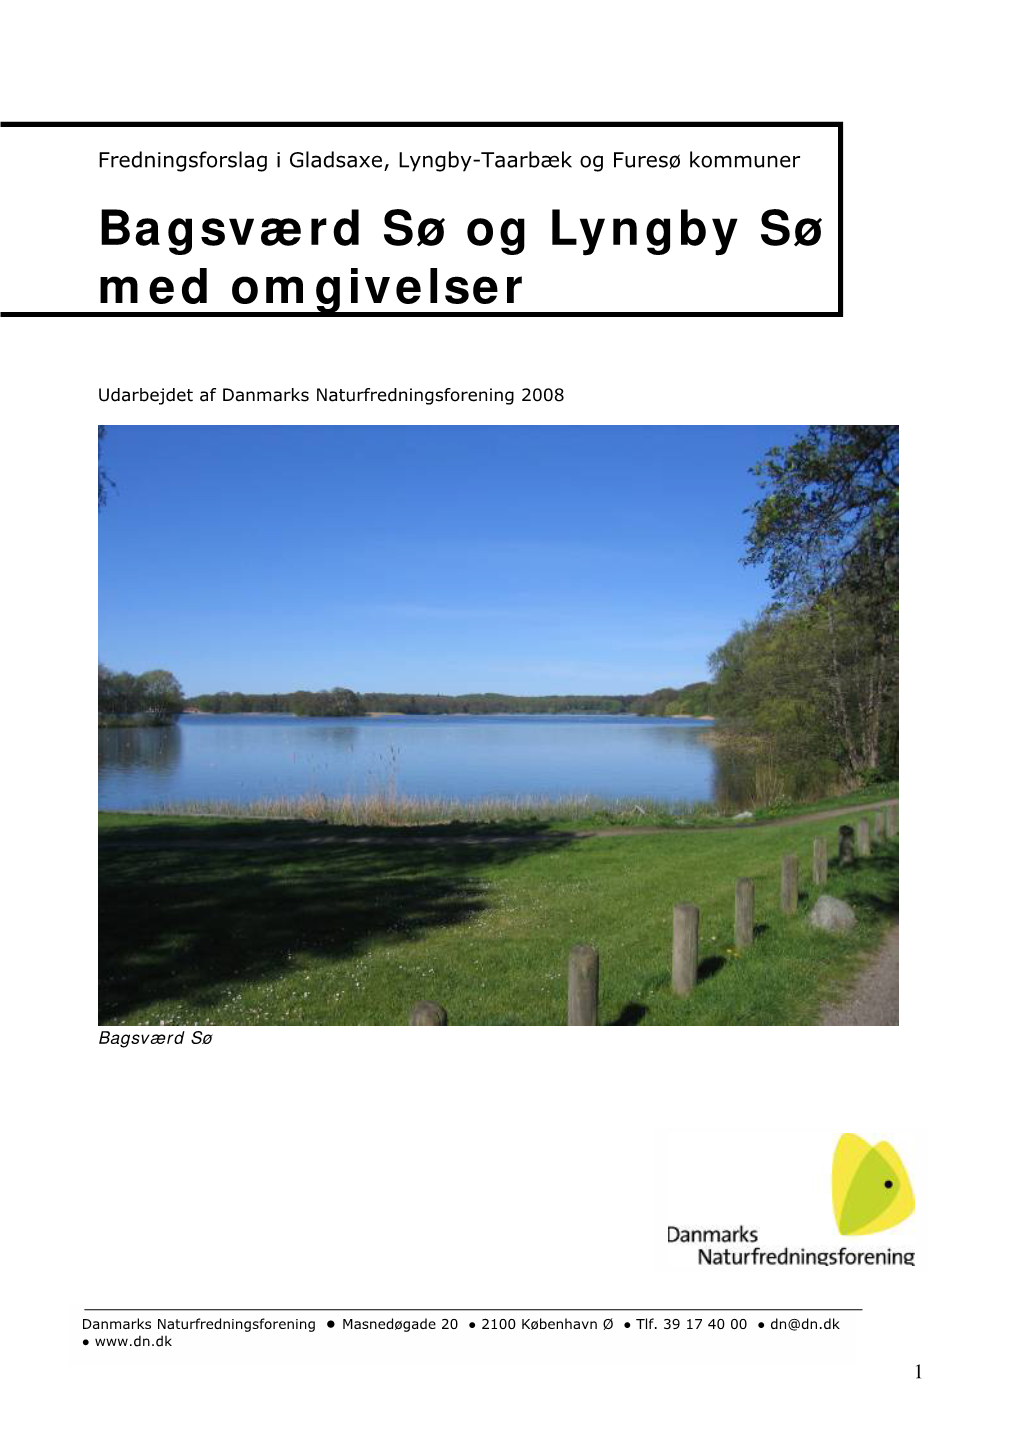 Bagsværd Sø Og Lyngby Sø Med Omgivelser